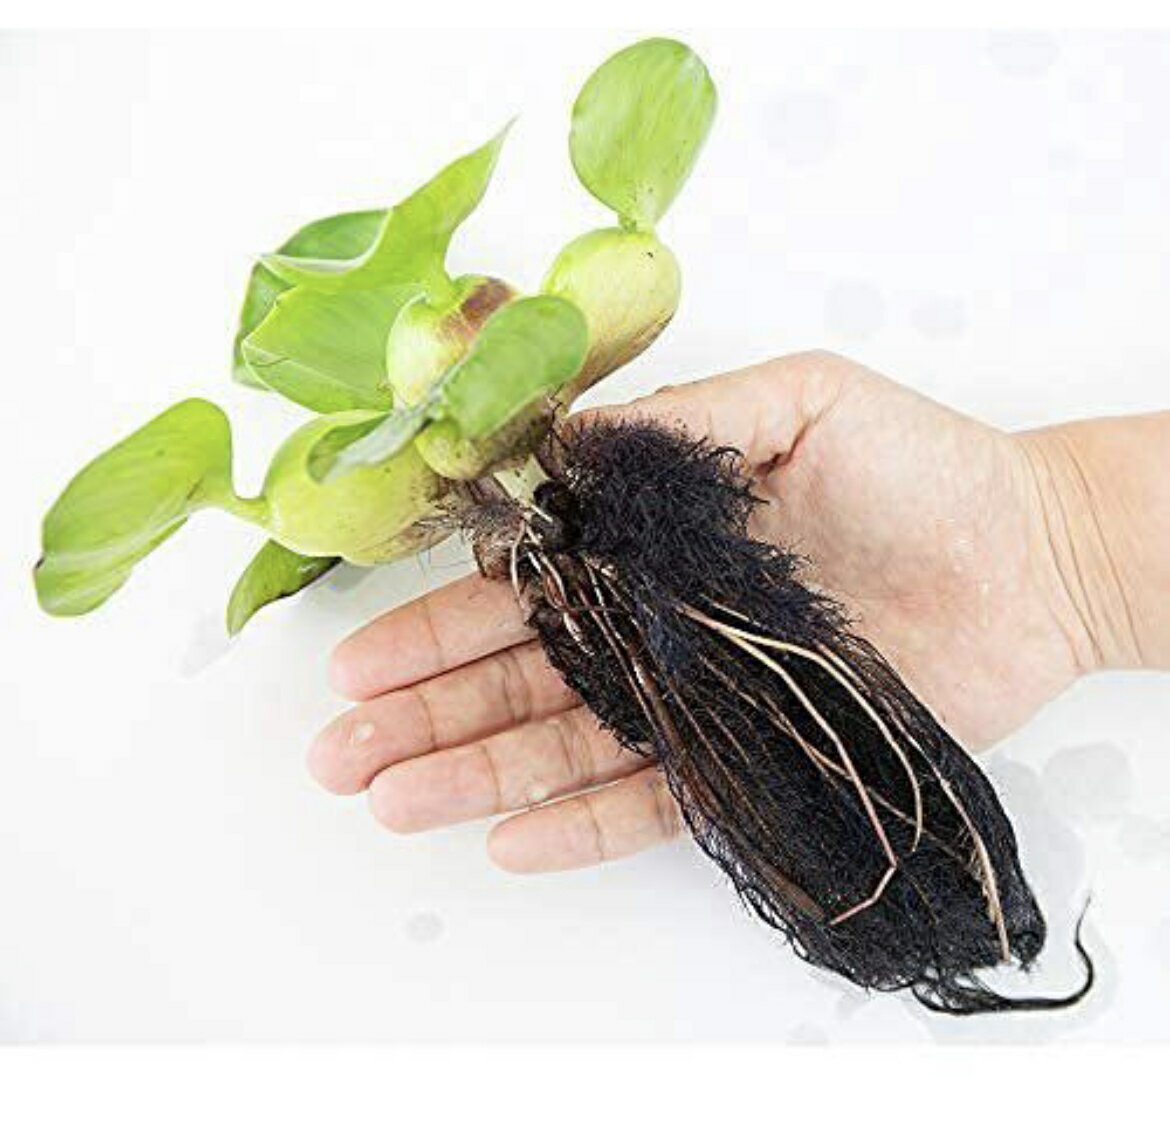 ミズアオイ科（Pontederiaceae）の植物。学名Eichhornia crassipes。 金魚鉢によく浮べられる浮草です。南米大陸原産の浮遊植物。園芸用水生植物として最もその名を知られた植物の一つで、 フロート状に膨らんだ葉柄によって水面に浮かび、観賞価値の高い青紫色の花をつけます。 水質浄化作用があり、根がメダカの産卵床や隠れ家として最適なので、メダカや金魚の繁殖用としてもよく使用されます。 茎を平行に伸ばして増えます。その草姿からホテイアオイの和名が付けられています。 根がメダカの産卵床として最適なのでメダカの繁殖用としてもよく使用されます また、土に根を下ろして成長することも出来、その場合ポンテデリアによく似た草姿となります。 草丈は最大で60cm以上になるなど、一般的に販売されているサイズからは想像し難いほどに大きく成長します。 性質は非常に強健で、強光さえ確保できれば大きく成長し、次々に子株を付けて増殖していきます。 強光が必要なので基本的にはビオトープなどで育成するのが最適です。 室内で育成する場合はメタハラなどが必要です。 耐寒性はないので気温が15度を下回るようになってきたら屋内にいれます。ミズアオイ科（Pontederiaceae）の植物。学名Eichhornia crassipes。 金魚鉢によく浮べられる浮草です。南米大陸原産の浮遊植物。園芸用水生植物として最もその名を知られた植物の一つで、 フロート状に膨らんだ葉柄によって水面に浮かび、観賞価値の高い青紫色の花をつけます。 水質浄化作用があり、根がメダカの産卵床や隠れ家として最適なので、メダカや金魚の繁殖用としてもよく使用されます。 茎を平行に伸ばして増えます。その草姿からホテイアオイの和名が付けられています。 根がメダカの産卵床として最適なのでメダカの繁殖用としてもよく使用されます また、土に根を下ろして成長することも出来、その場合ポンテデリアによく似た草姿となります。 草丈は最大で60cm以上になるなど、一般的に販売されているサイズからは想像し難いほどに大きく成長します。 性質は非常に強健で、強光さえ確保できれば大きく成長し、次々に子株を付けて増殖していきます。 強光が必要なので基本的にはビオトープなどで育成するのが最適です。 室内で育成する場合はメタハラなどが必要です。 耐寒性はないので気温が15度を下回るようになってきたら屋内にいれます。